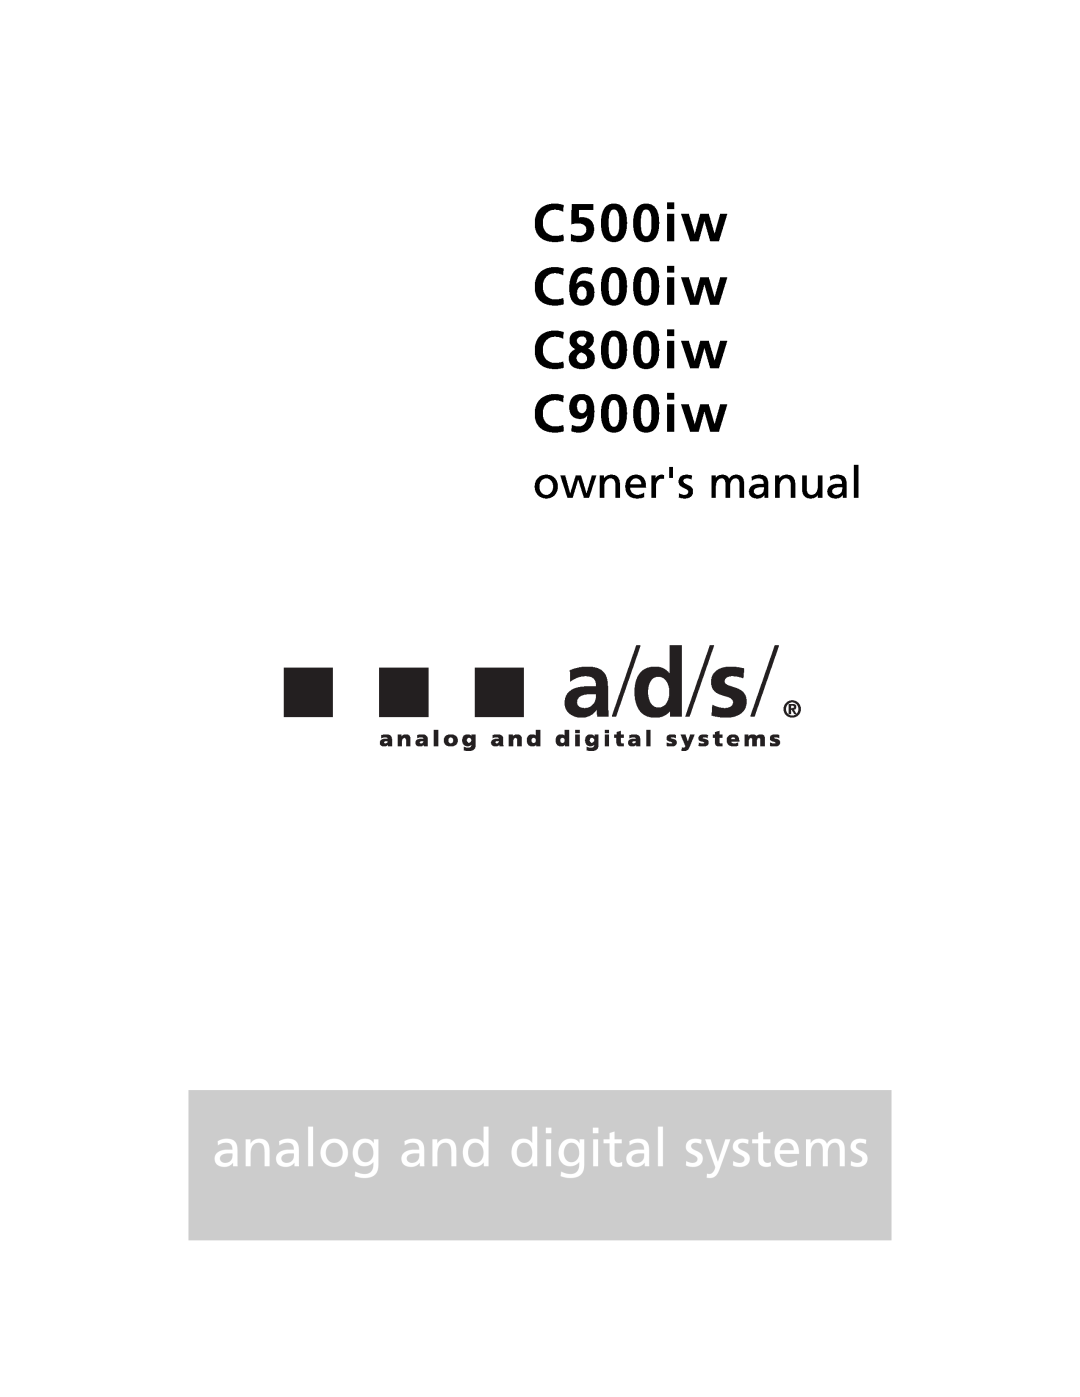 a/d/s/ owner manual C500iw C600iw C800iw C900iw, analog and digital systems 